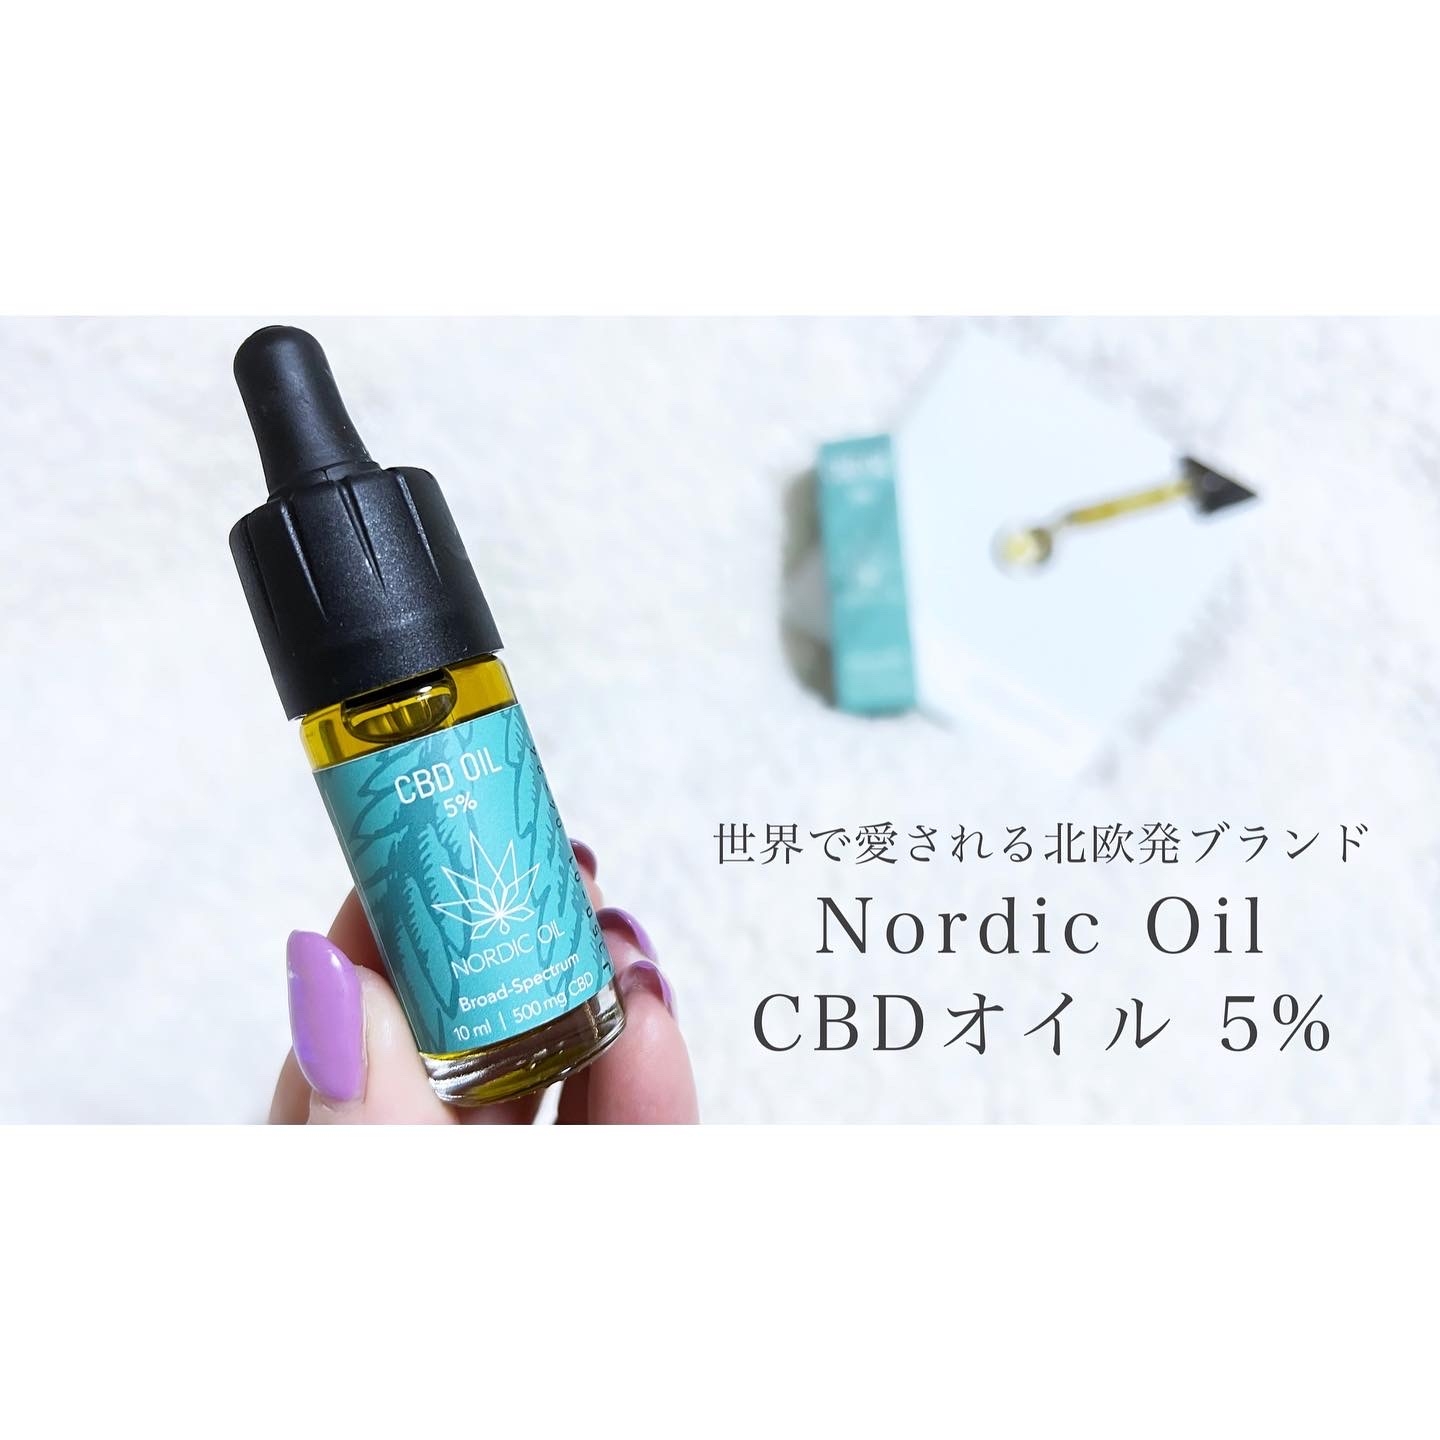 Nordic Oil  CBDオイル 5%の良い点・メリットに関するcosmemo2021さんの口コミ画像1